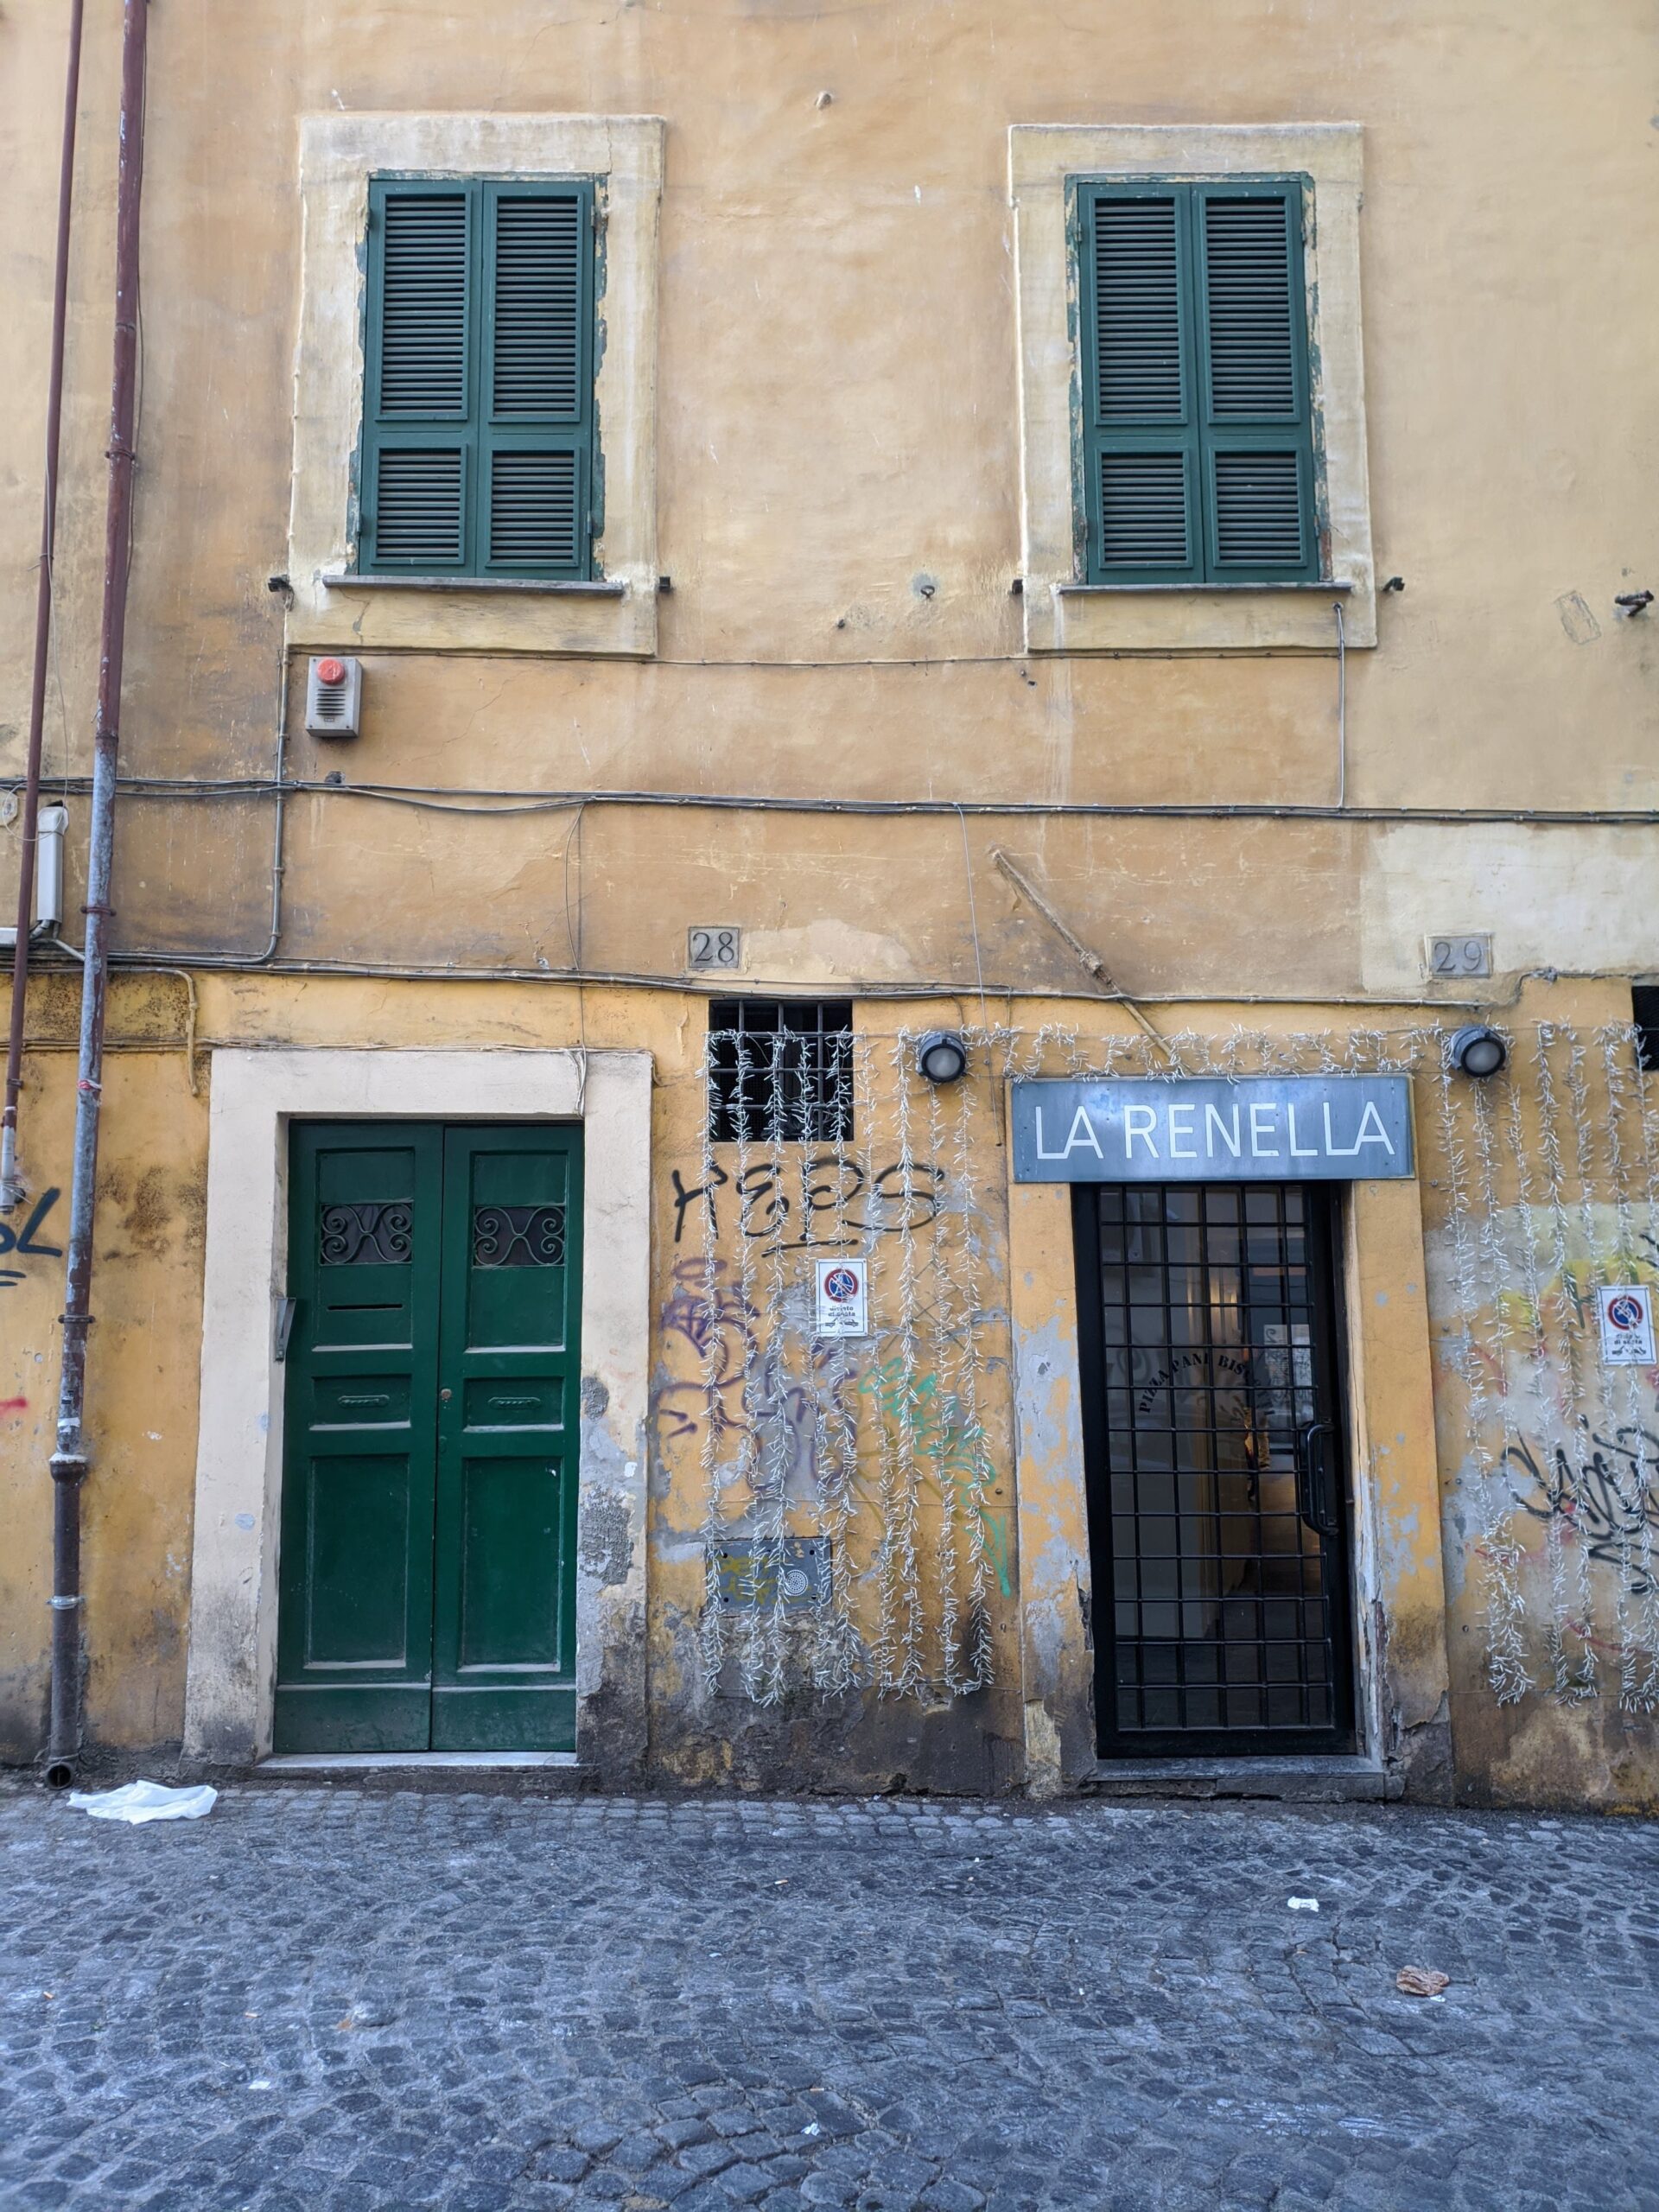 Fachada de um edifício em Trastevere com portas verdes, janelas com persianas fechadas e paredes desgastadas pela idade, exibindo um charme urbano e histórico, com grafites e plantas que decoram o exterior.